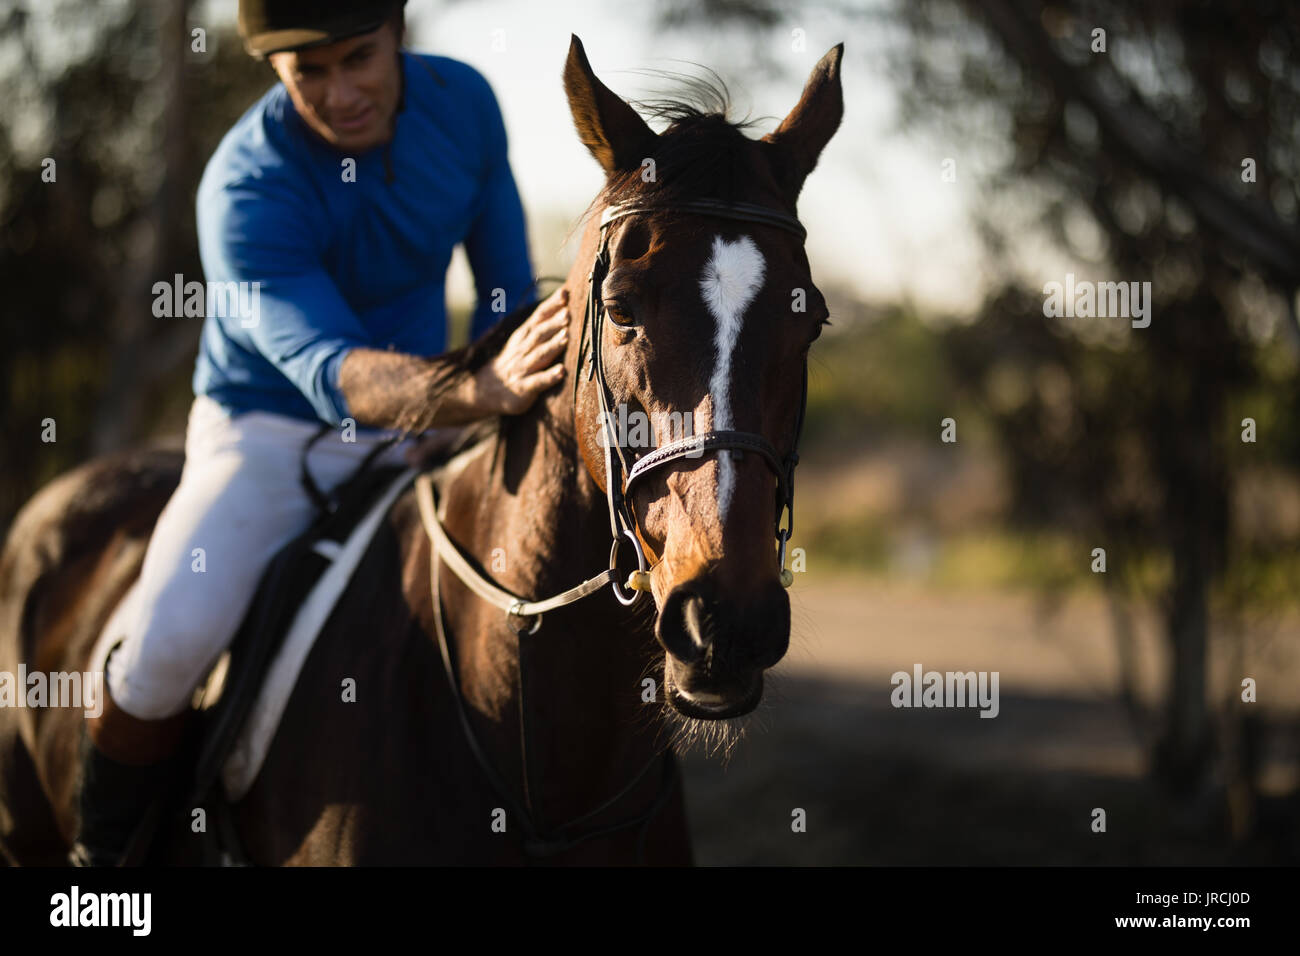 Male jockey riding horse at barn Stock Photo